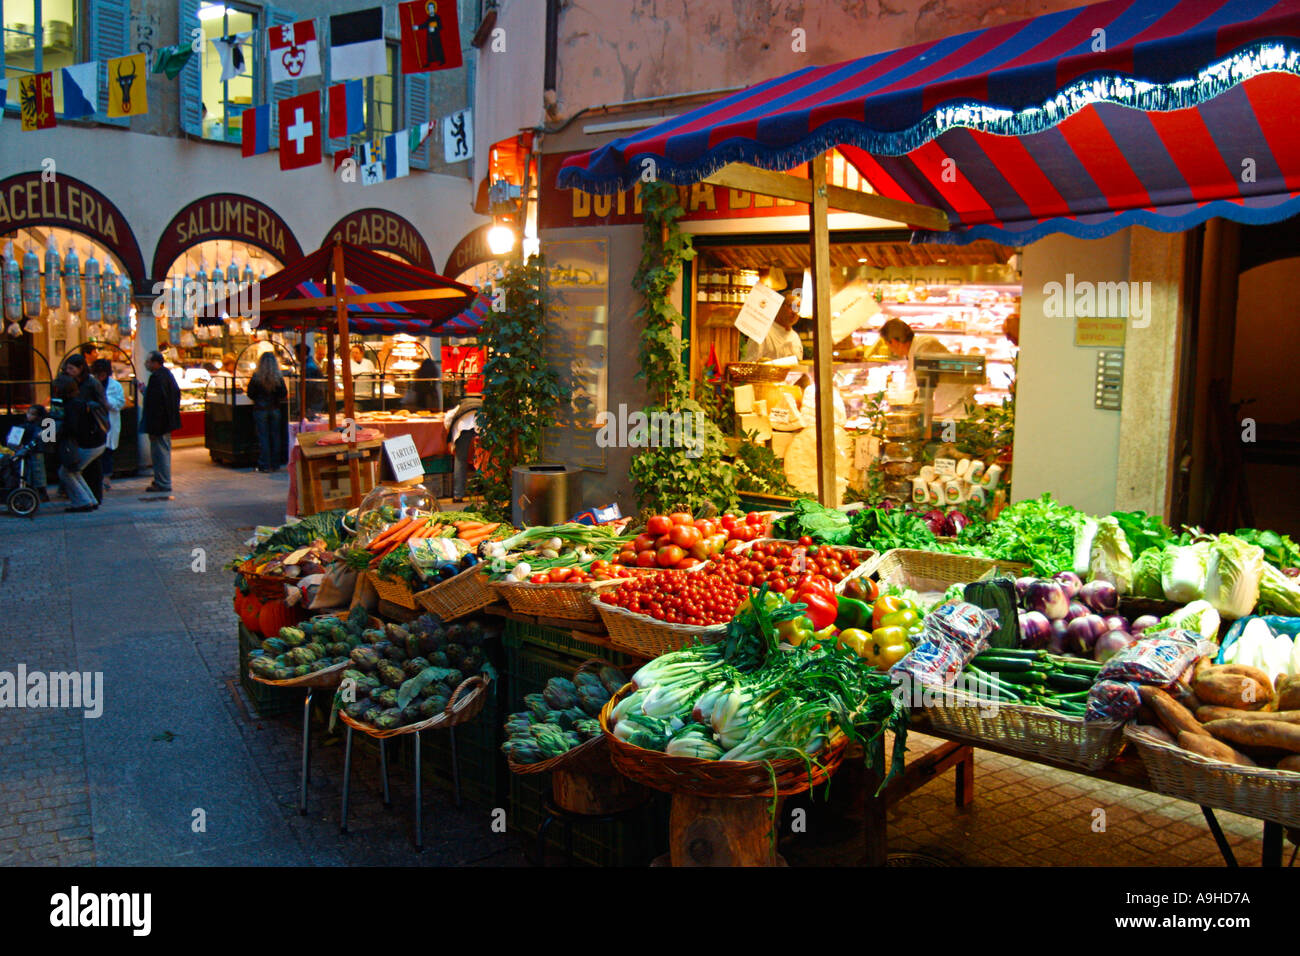 En el habitante Suiza Ticino Lugano centro antiguo de la ciudad a través de frutas y verduras Pessina calado exterior delicatessen Foto de stock